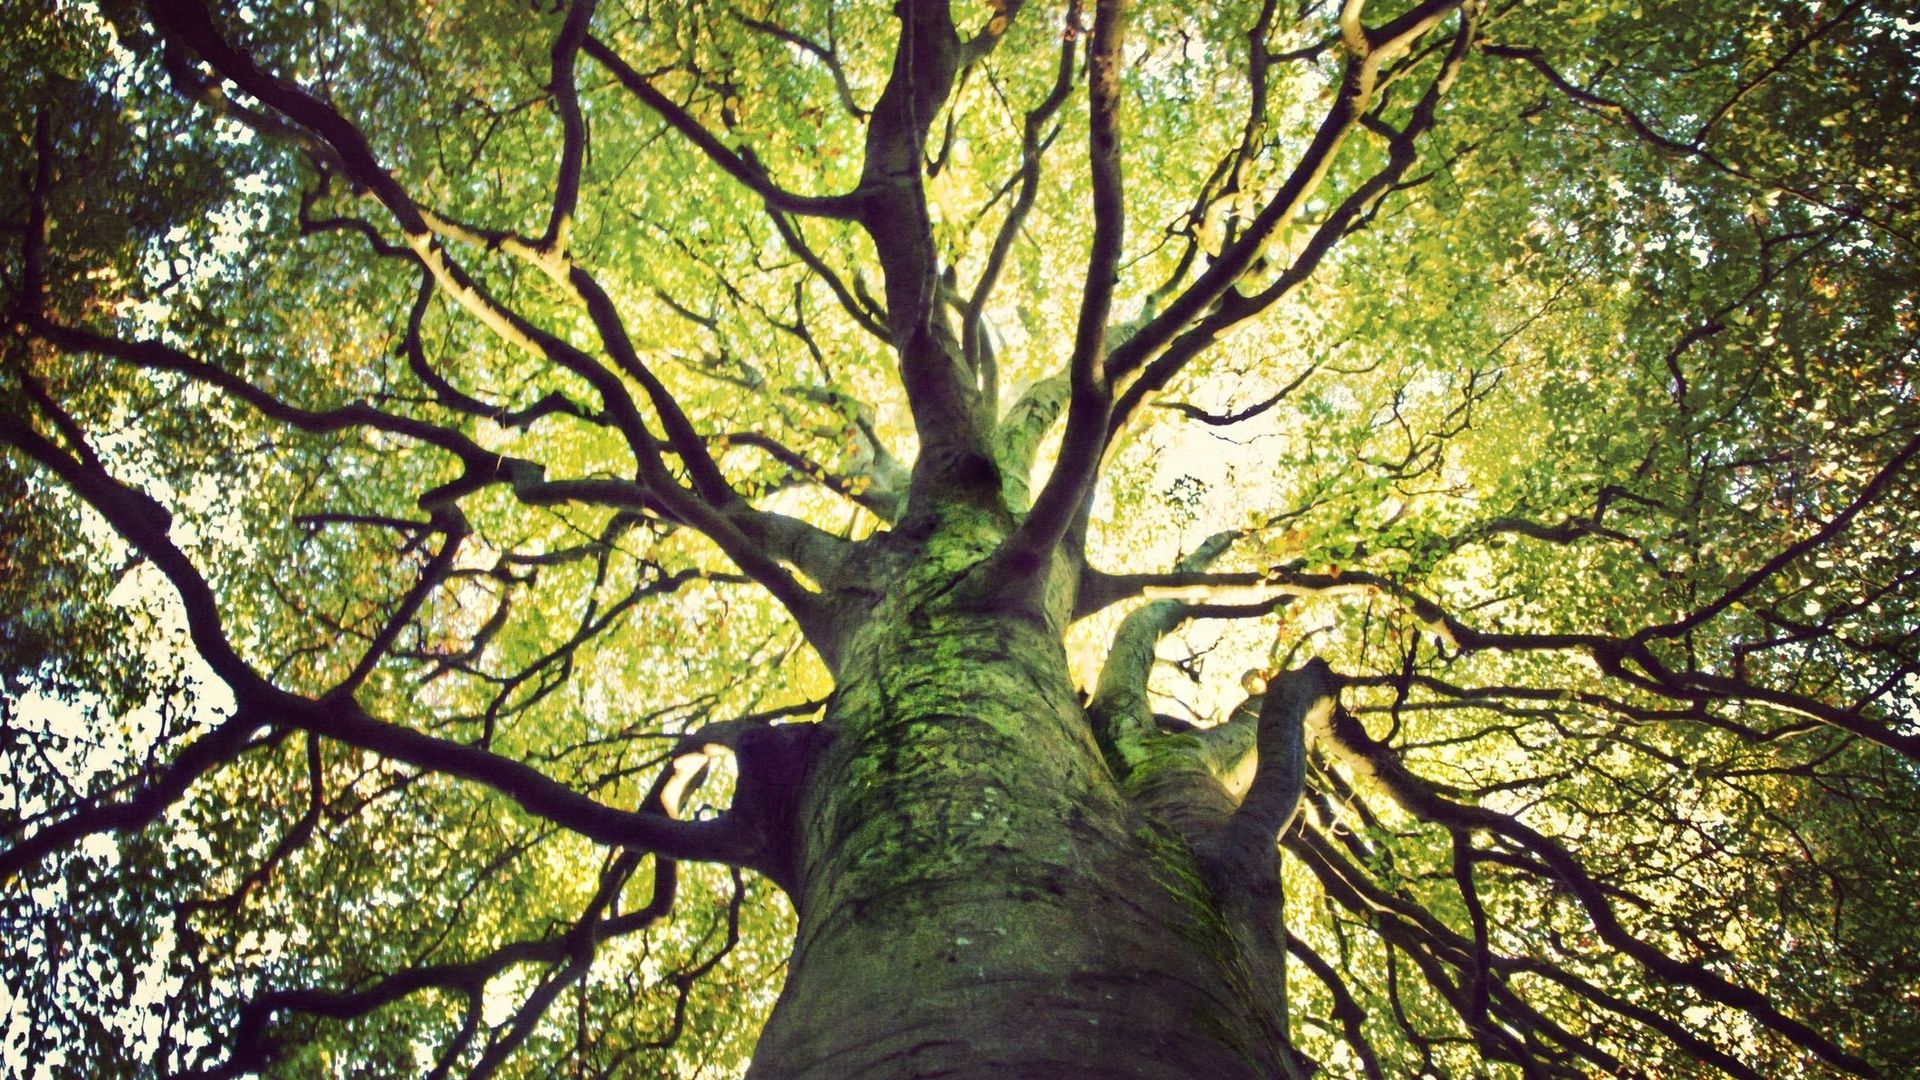 Il reste plus de 9000 espèces d'arbres à découvrir selon une étude.